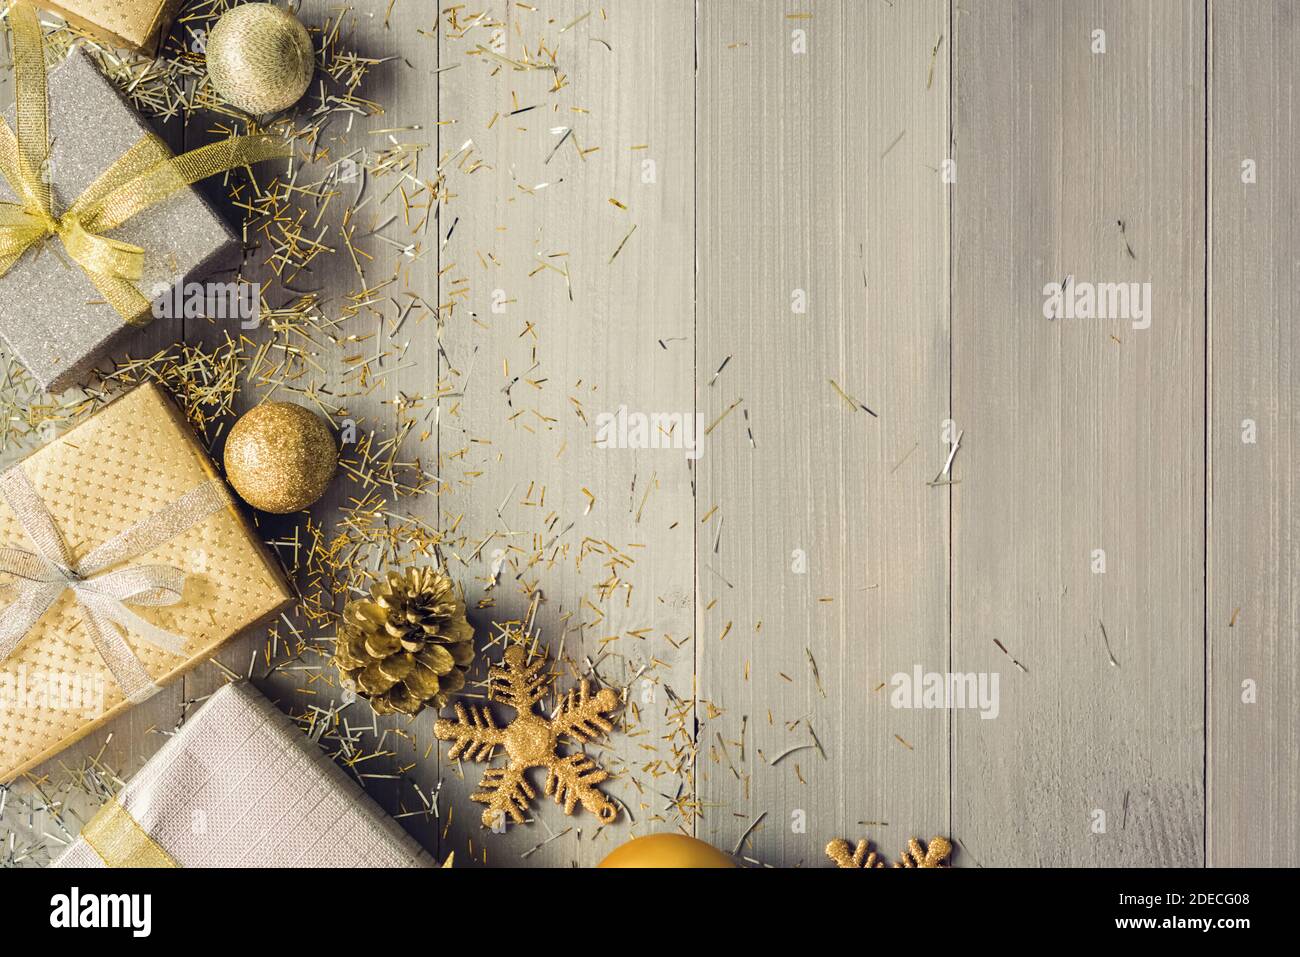 Boîtes-cadeaux argentées et dorées brillantes et décorations de Noël scintillantes objets sur fond de bois vue de dessus bordure avec copie espace Banque D'Images